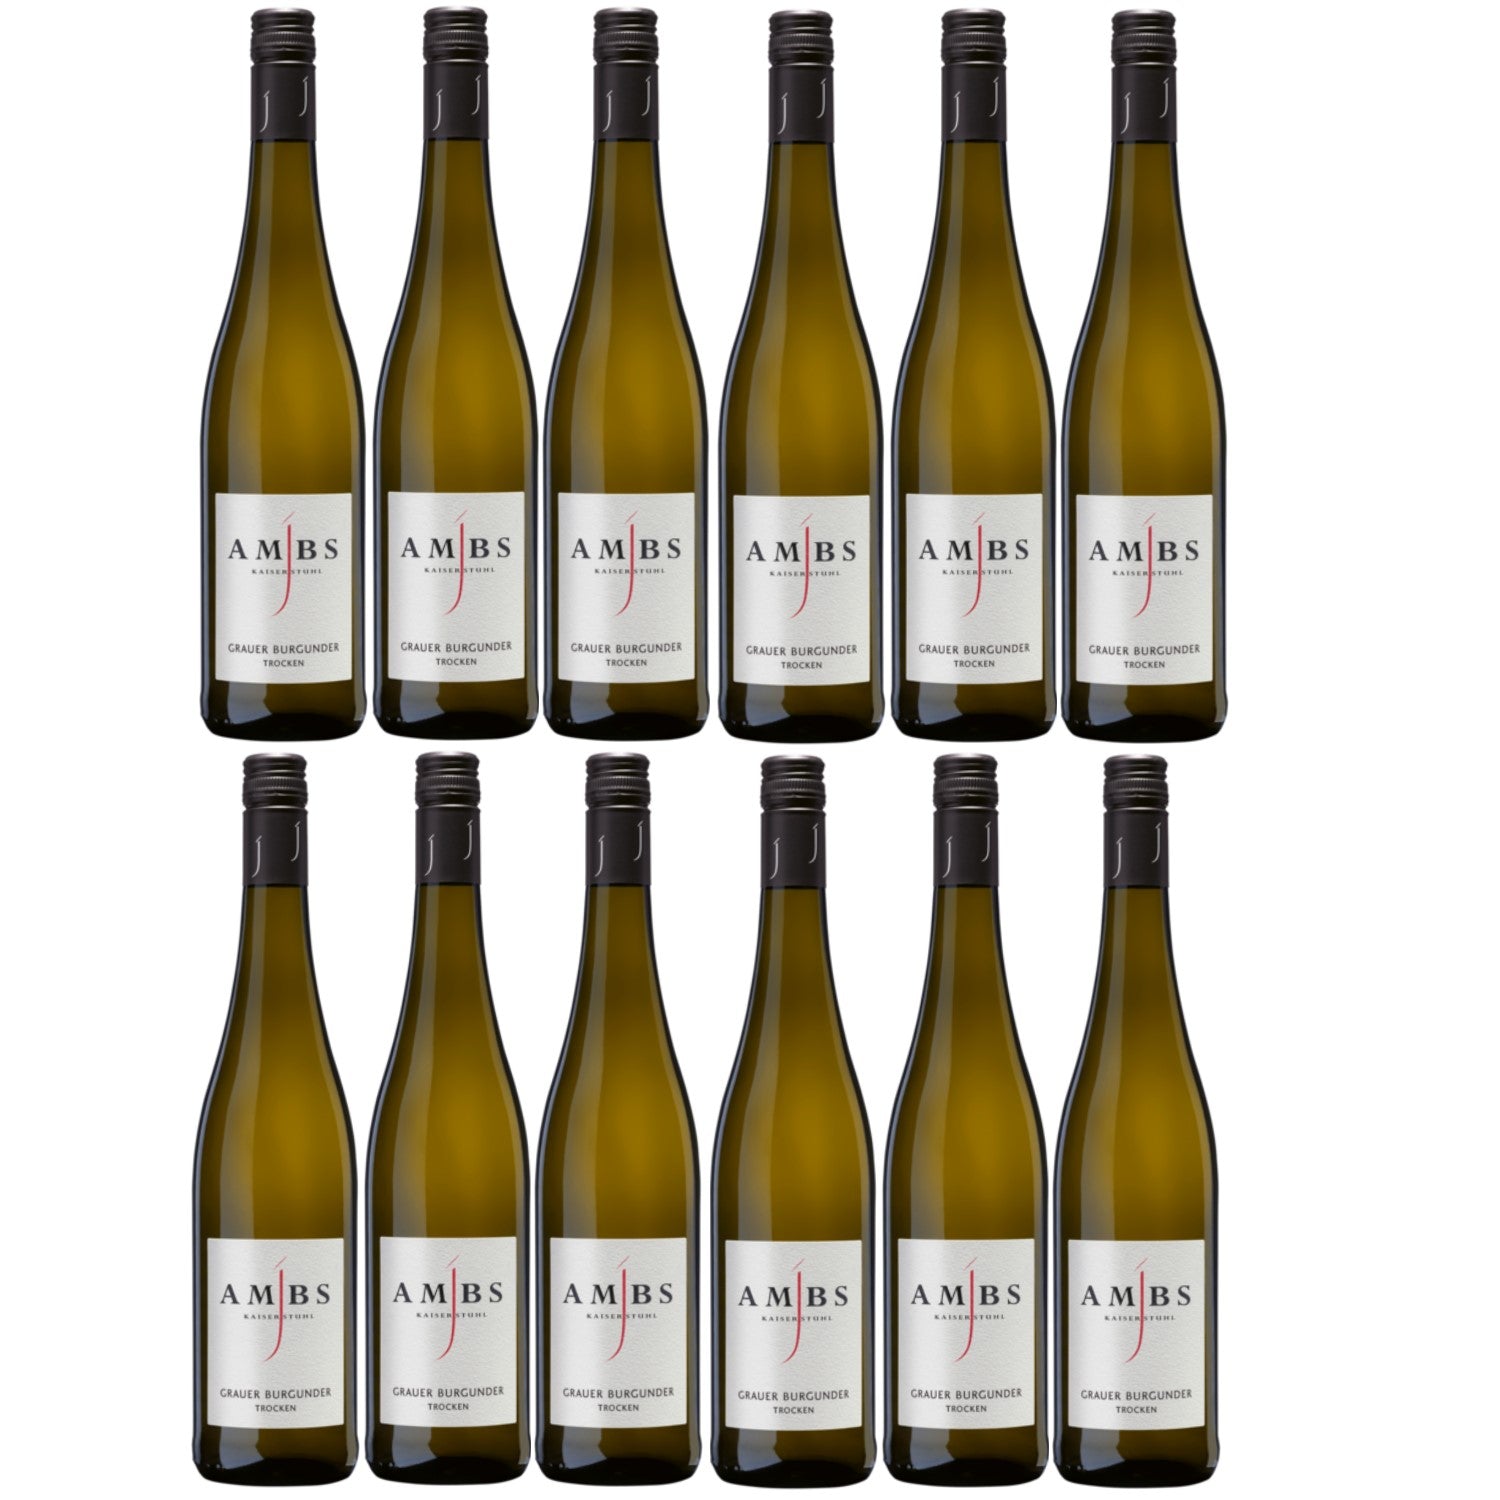 Josef Ambs Grauer Burgunder Kabinett Weißwein deutscher Wein trocken Deutschland (12 x 0.75l) - Versanel -